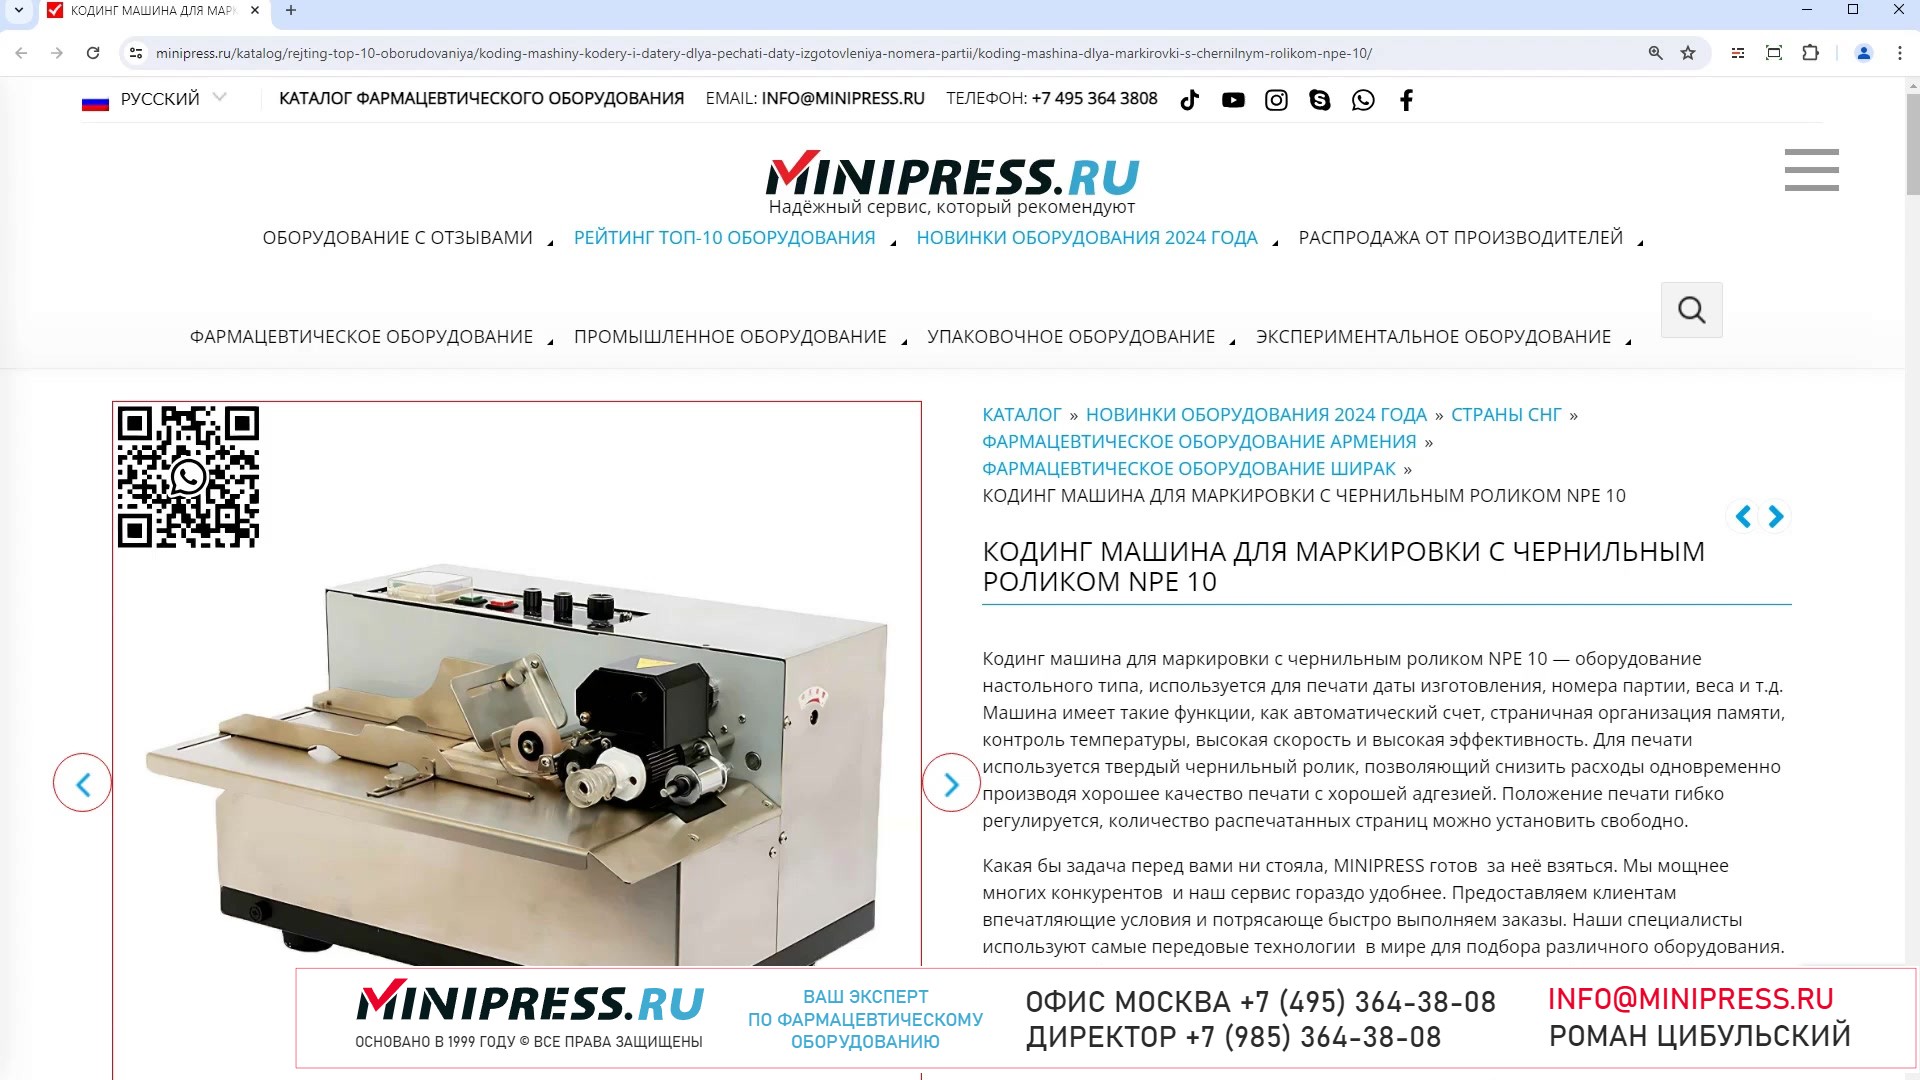 Minipress.ru Кодинг машина для маркировки с чернильным роликом NPE 10